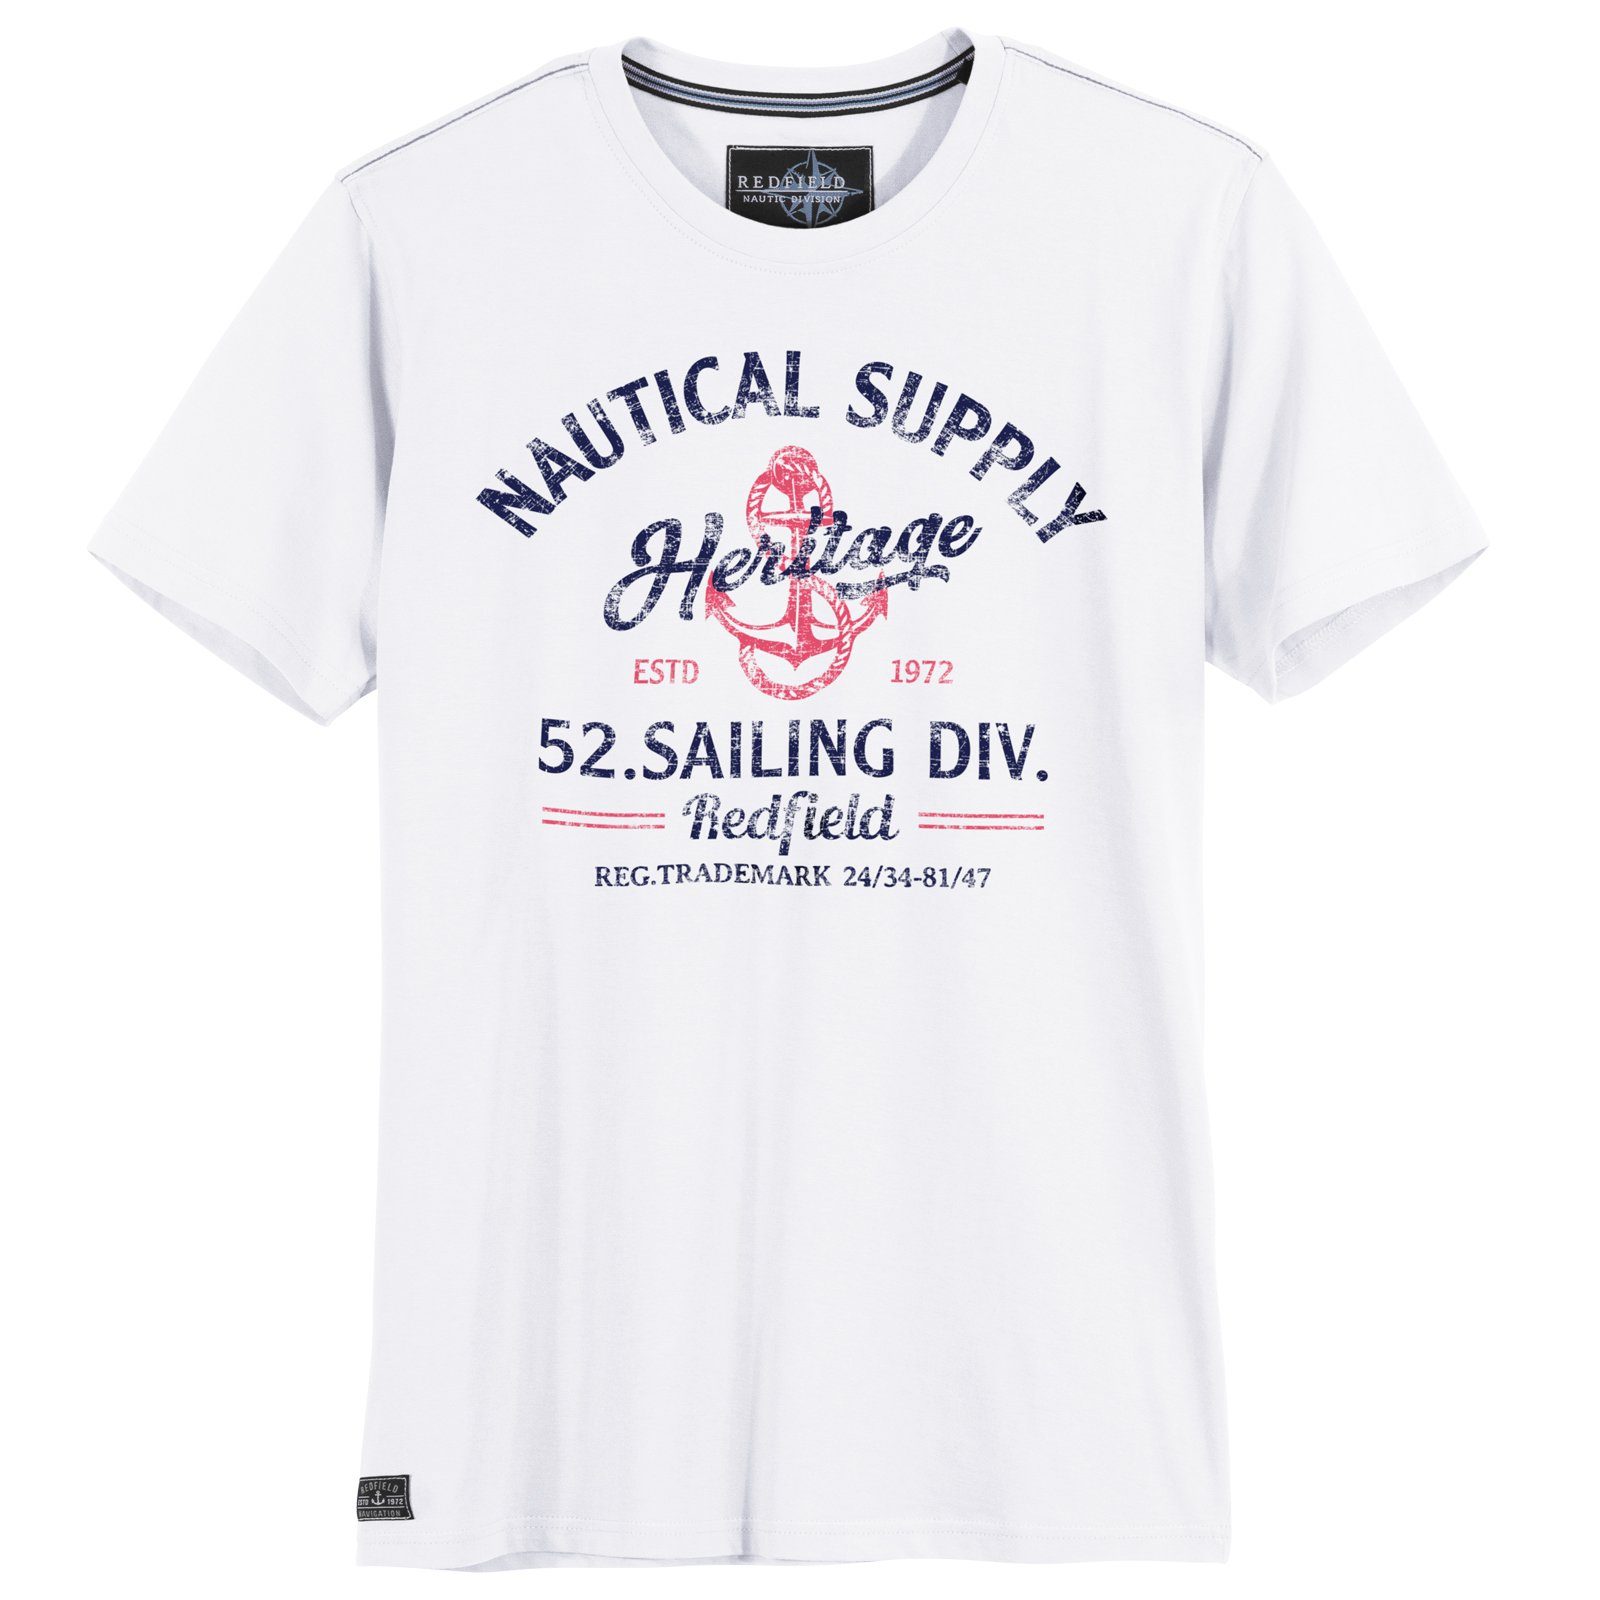 Herren Shirts redfield Print-Shirt Große Größen Herren T-Shirt Nautical Supply weiß Redfield